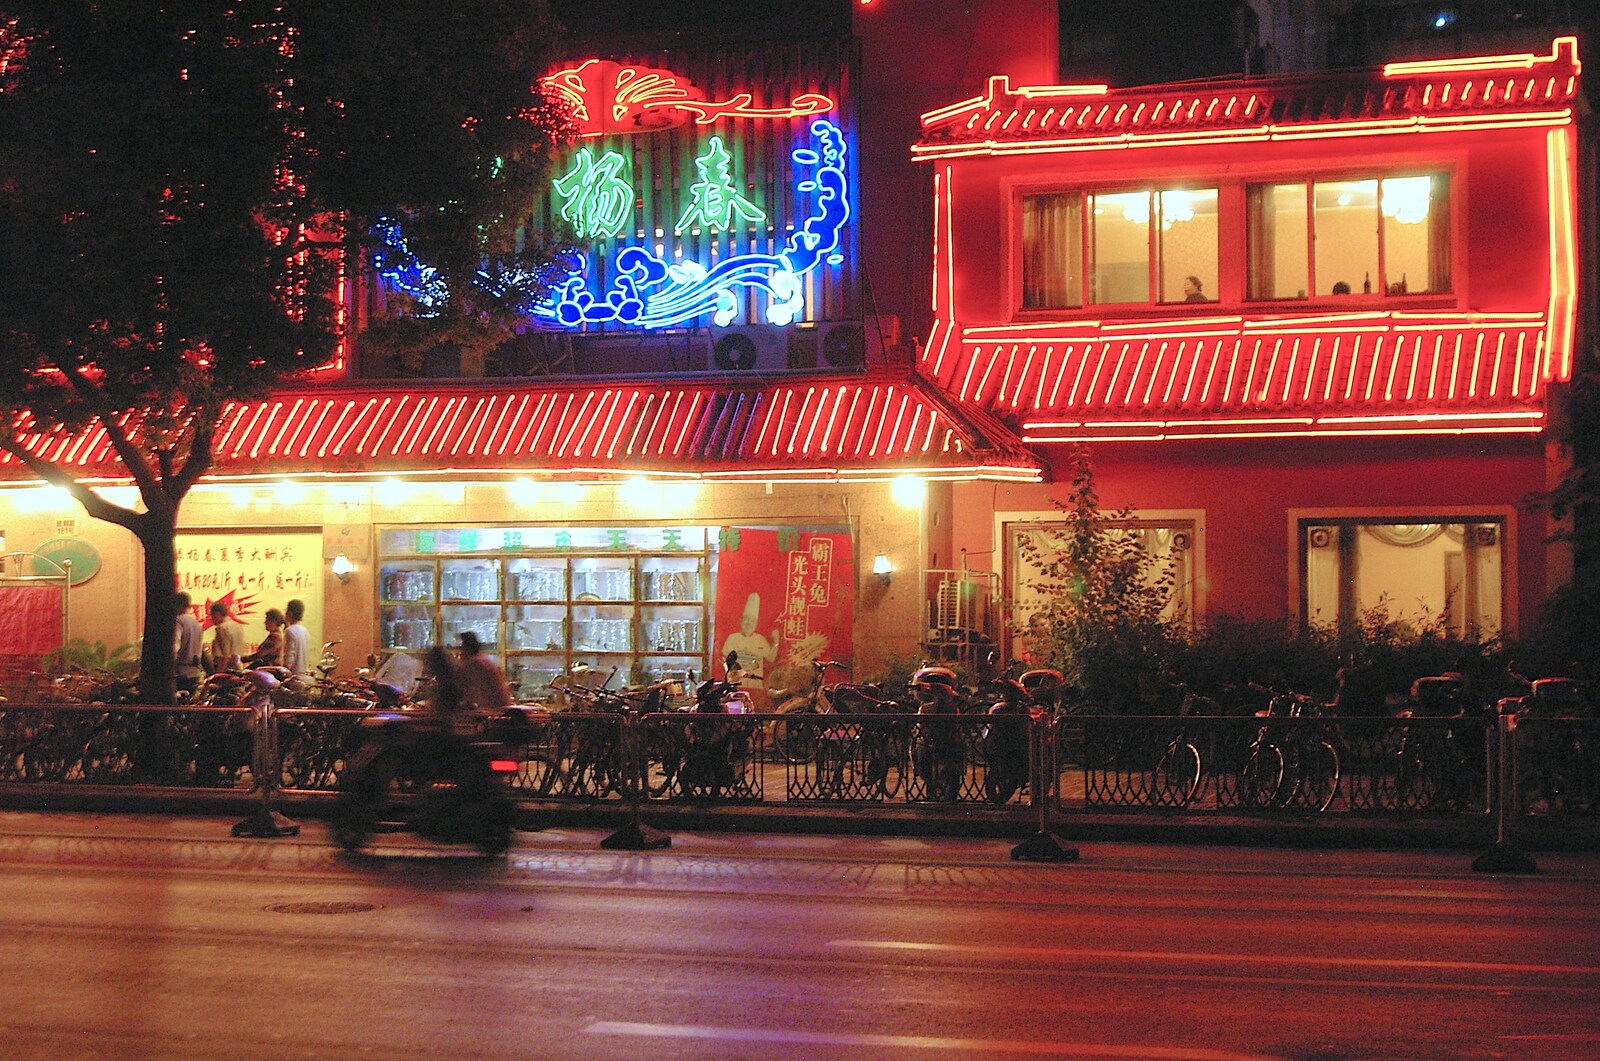 More neon from Nanjing by Night, Nanjing, Jiangsu Province, China - 4th October 2006